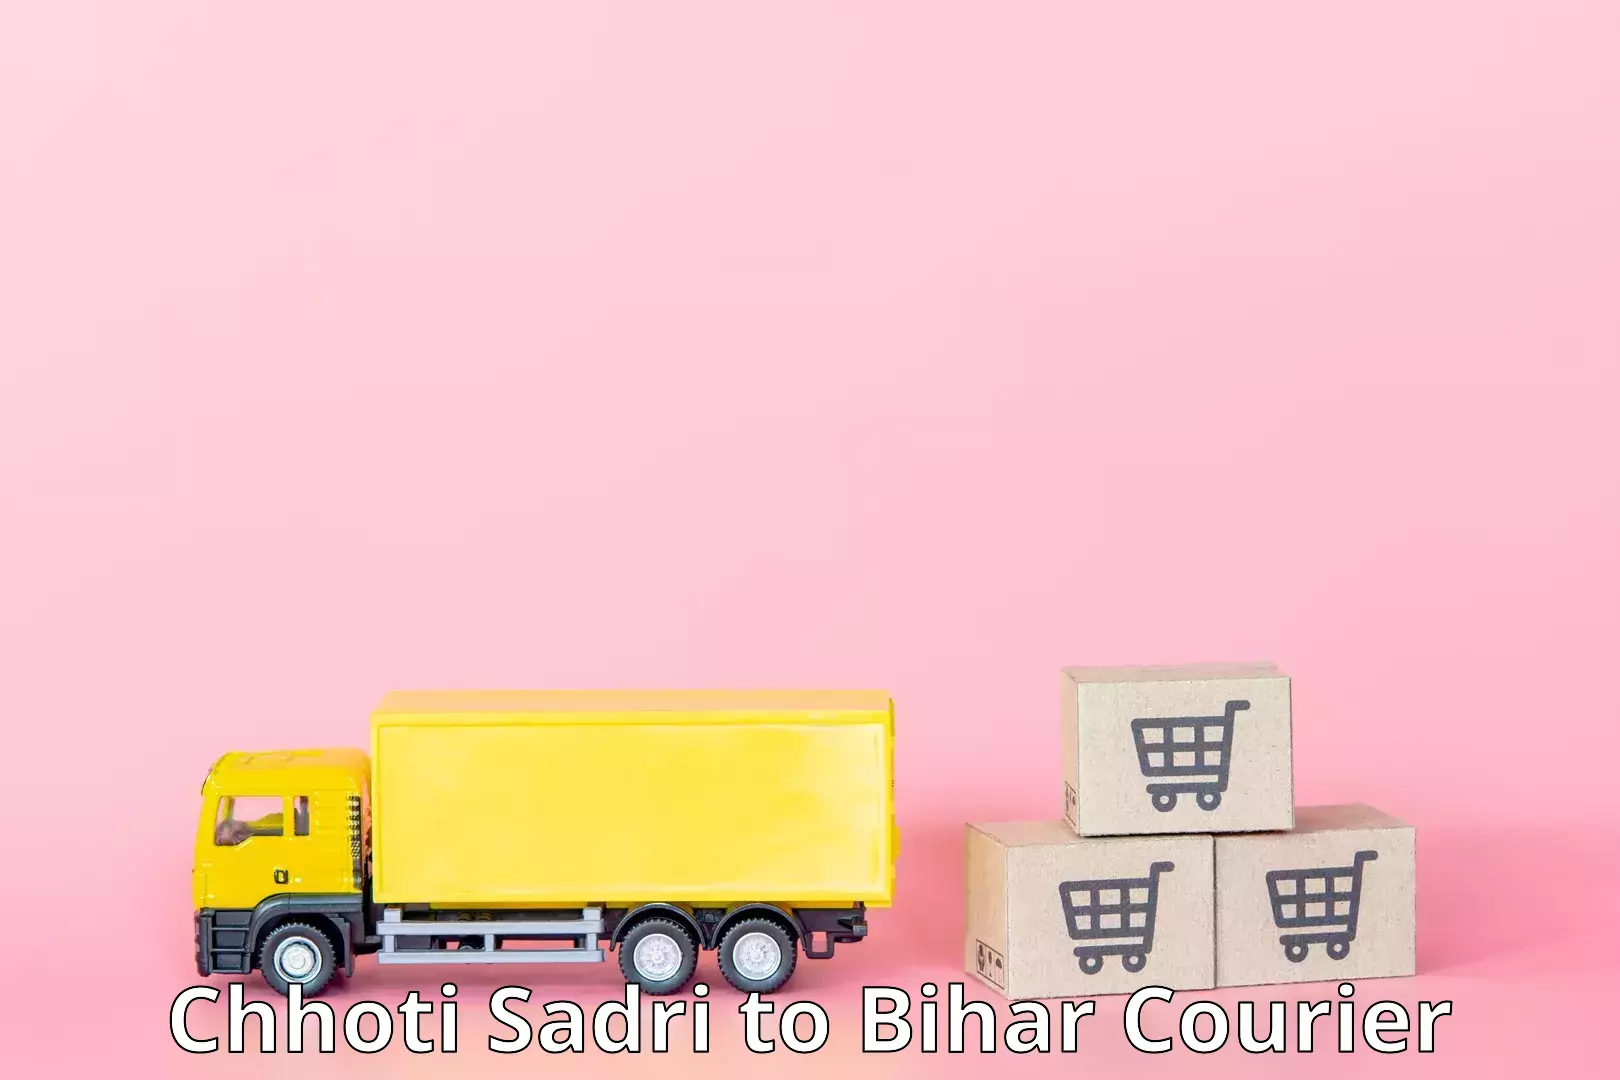 Urban courier service Chhoti Sadri to Sirdala